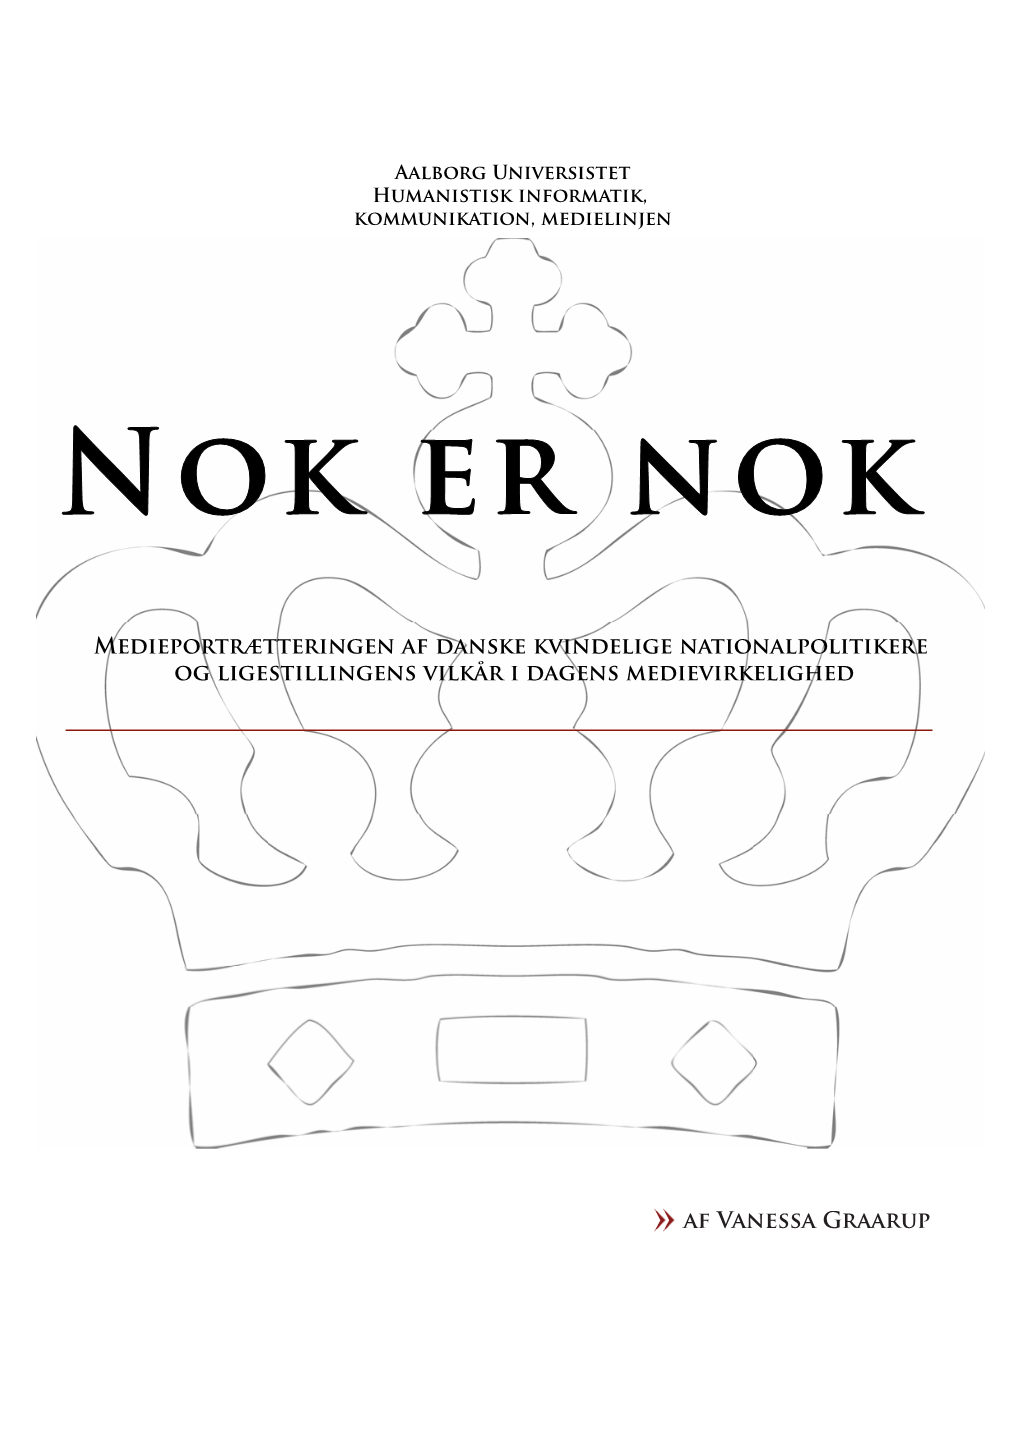 NOK ER NOK Medieportrætteringen Af Danske Kvindelige Nationalpolitikere Og Ligestillingens Vilkår I Dagens Medievirkelighed